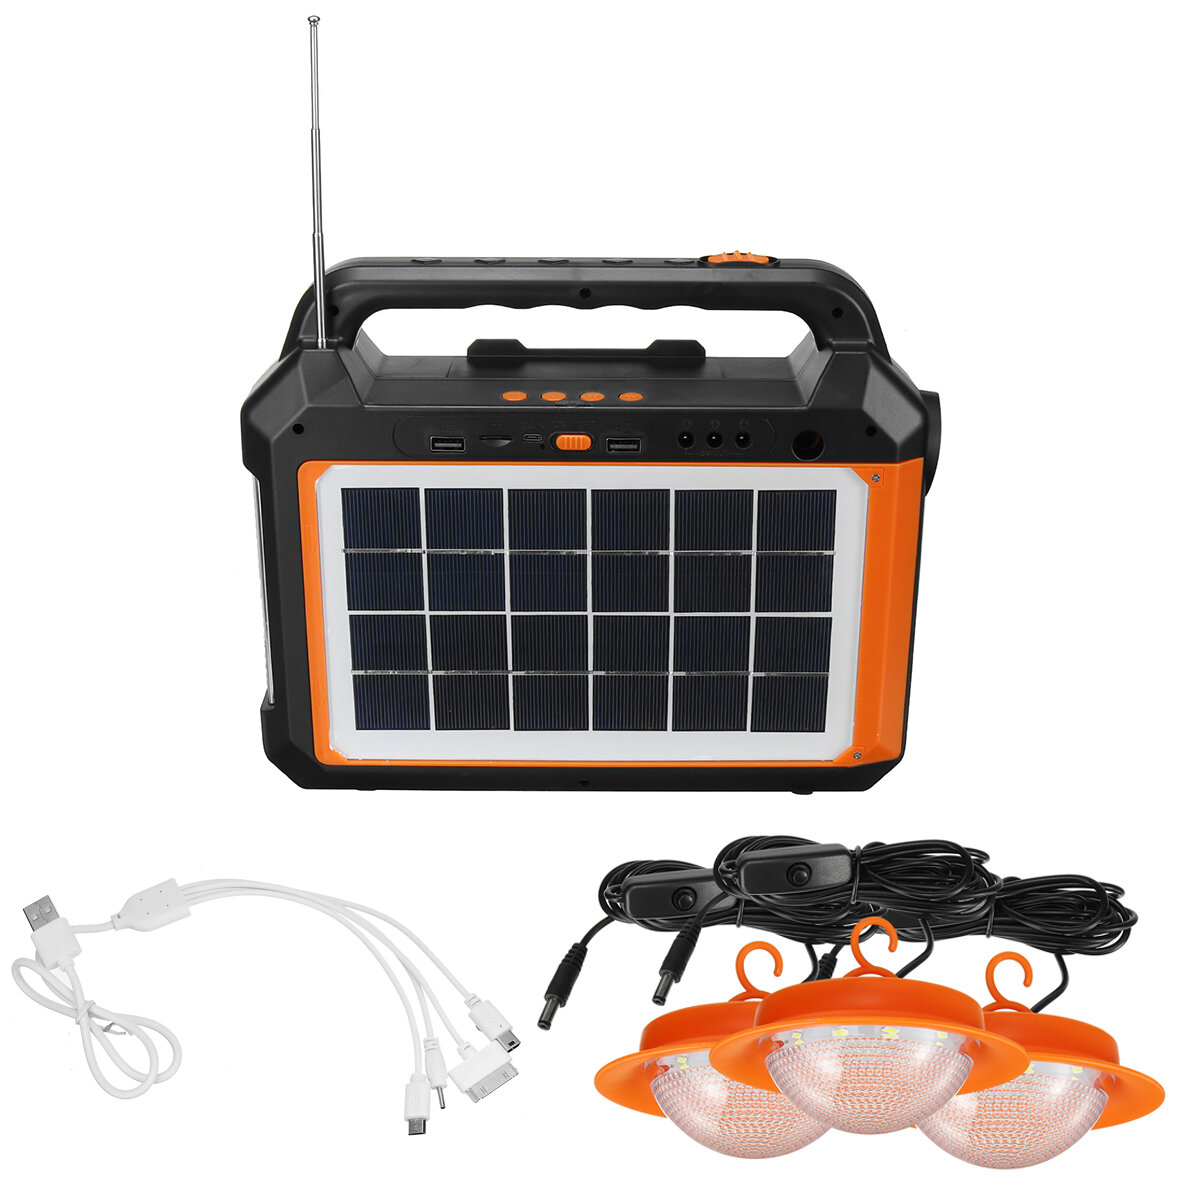 Banco de energia solar de 4500mAh externo Bluetooth Áudio Rádio USB Luz Comping recarregável para viagens em acampamento